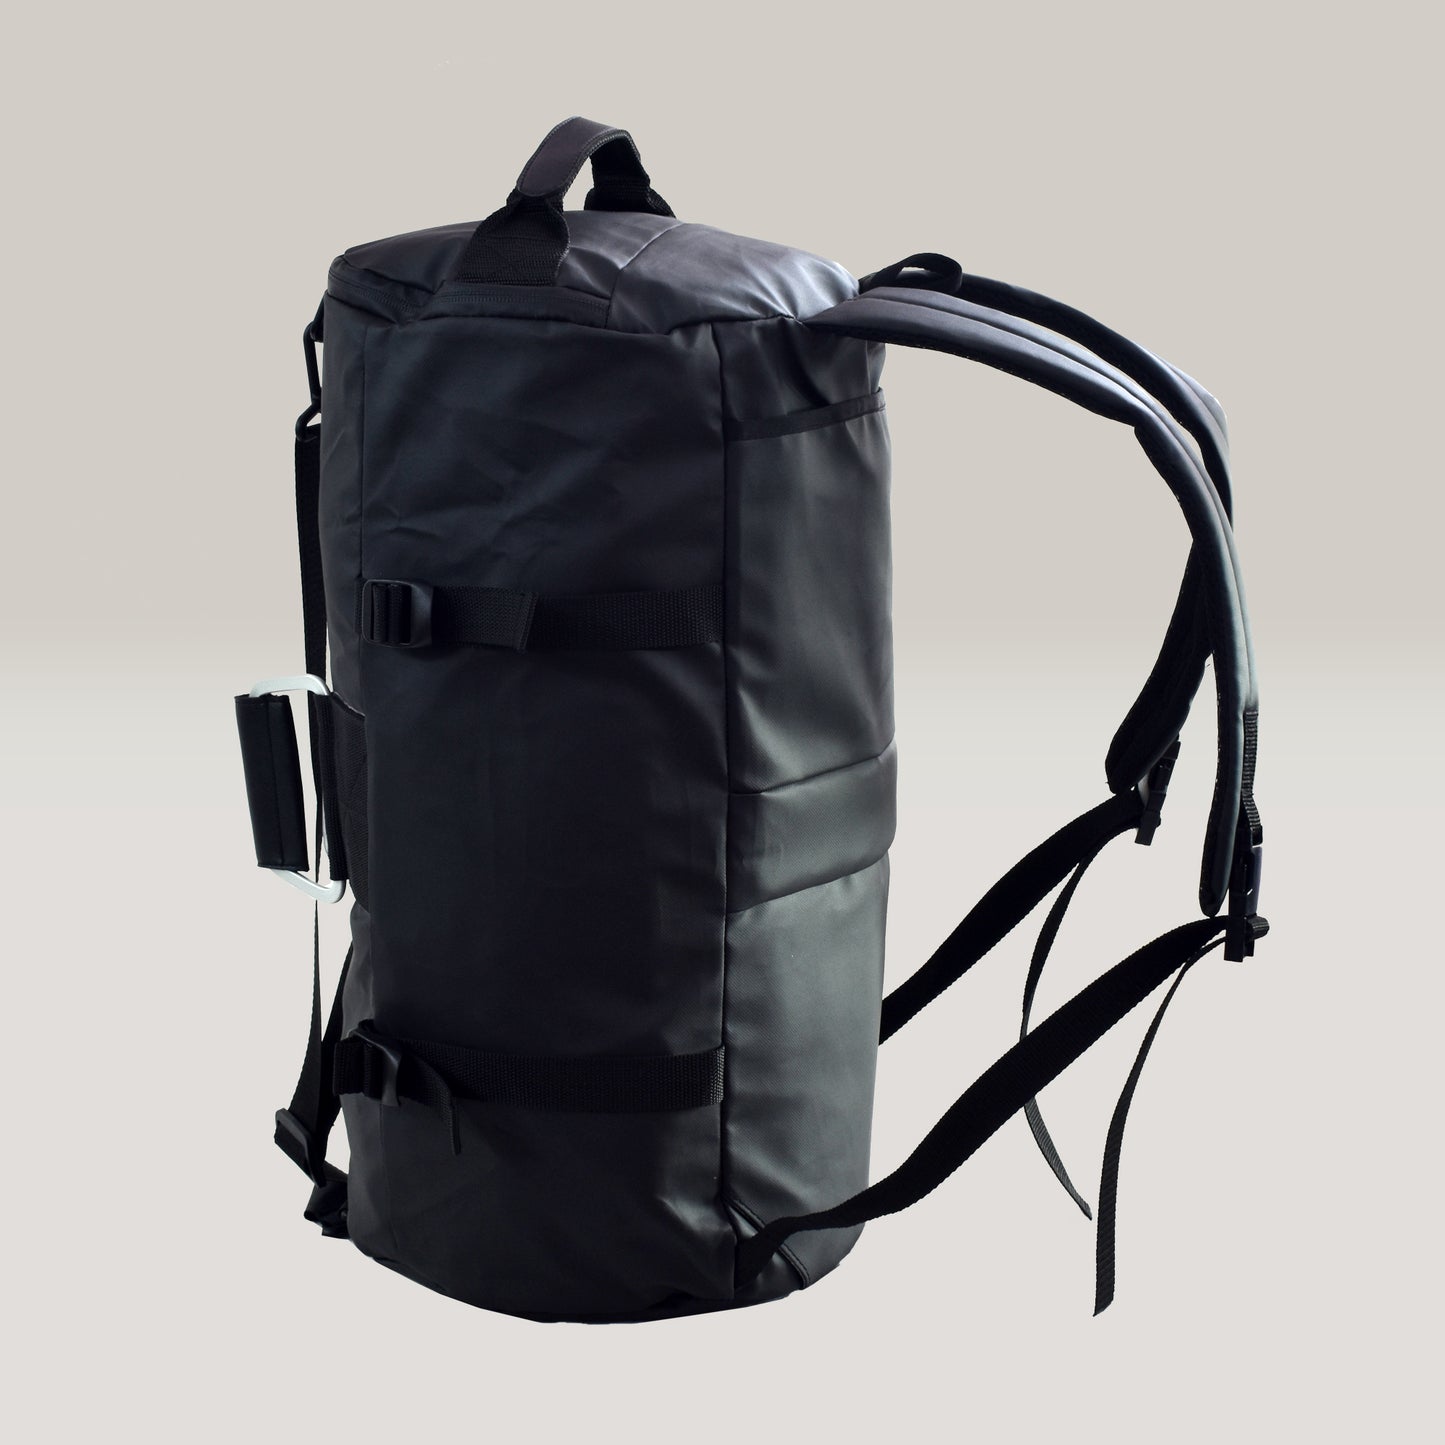 4in1 Bag Black | Travel Bag | Gym Bag | Waterproof